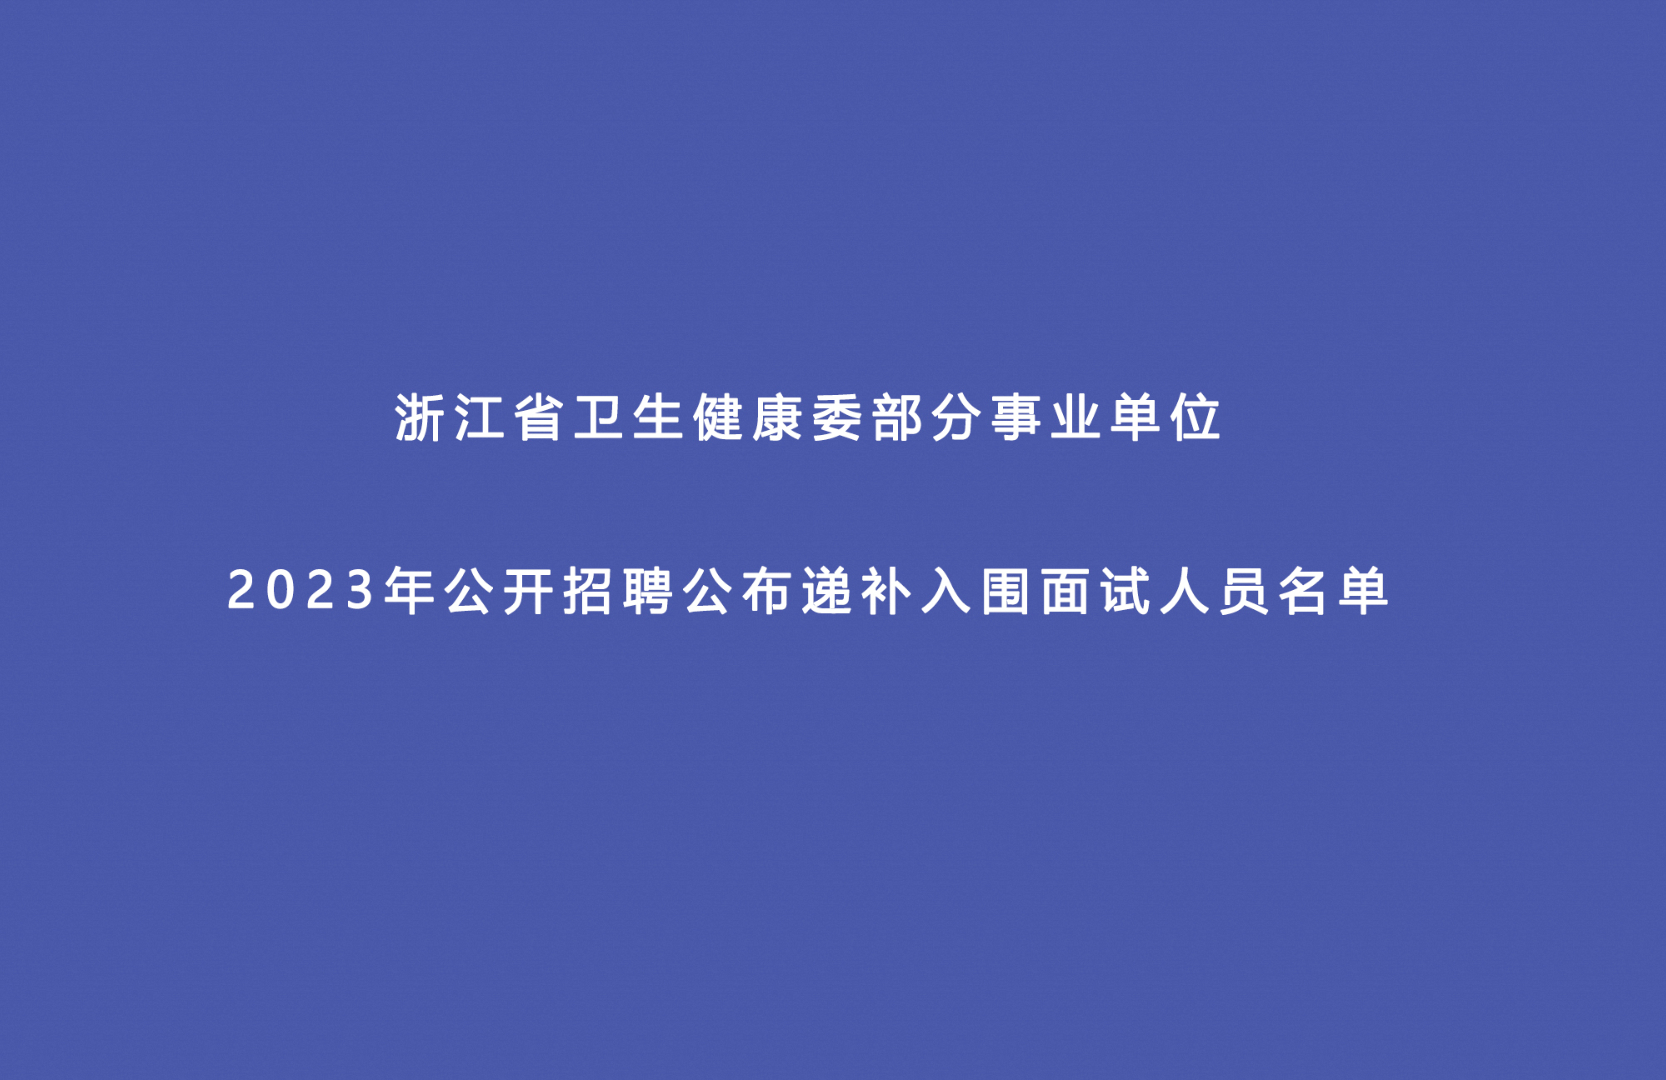 浙江省卫生健康委员会部分事业单位 2023年公开招聘递补入围面试人员名单